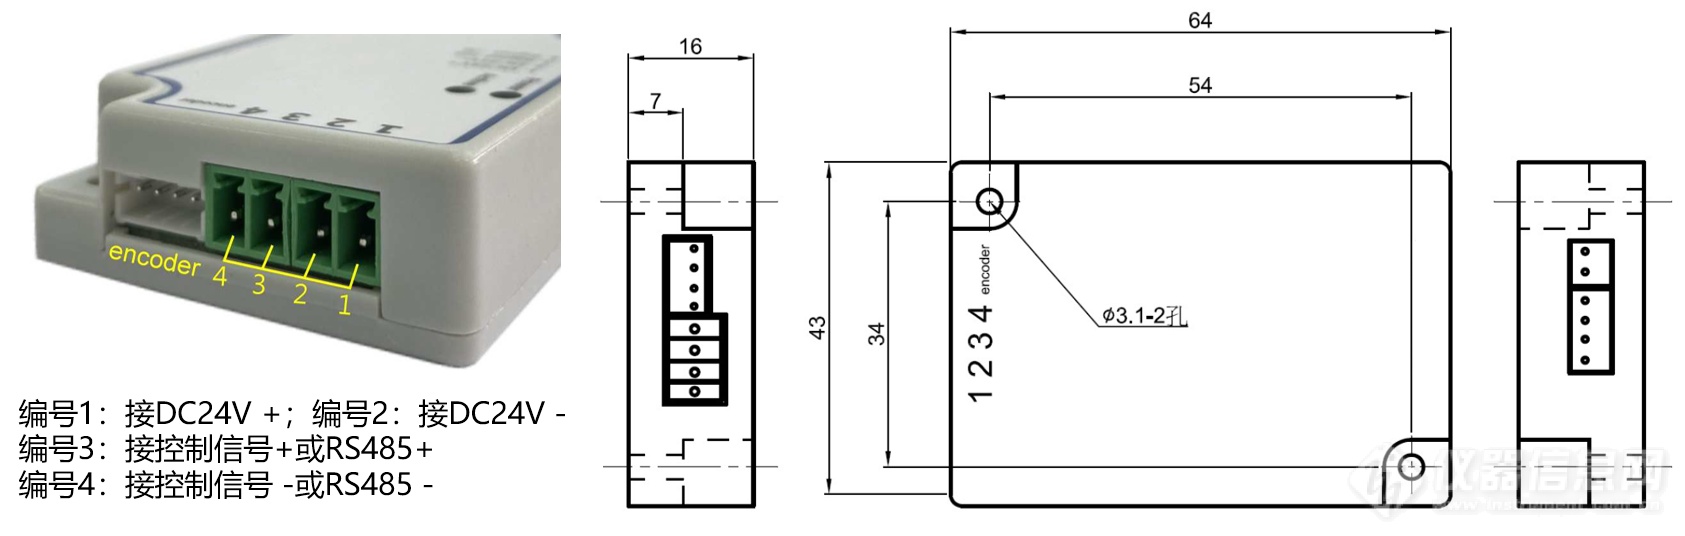 3-3 驱动电路模块及其尺寸图.png